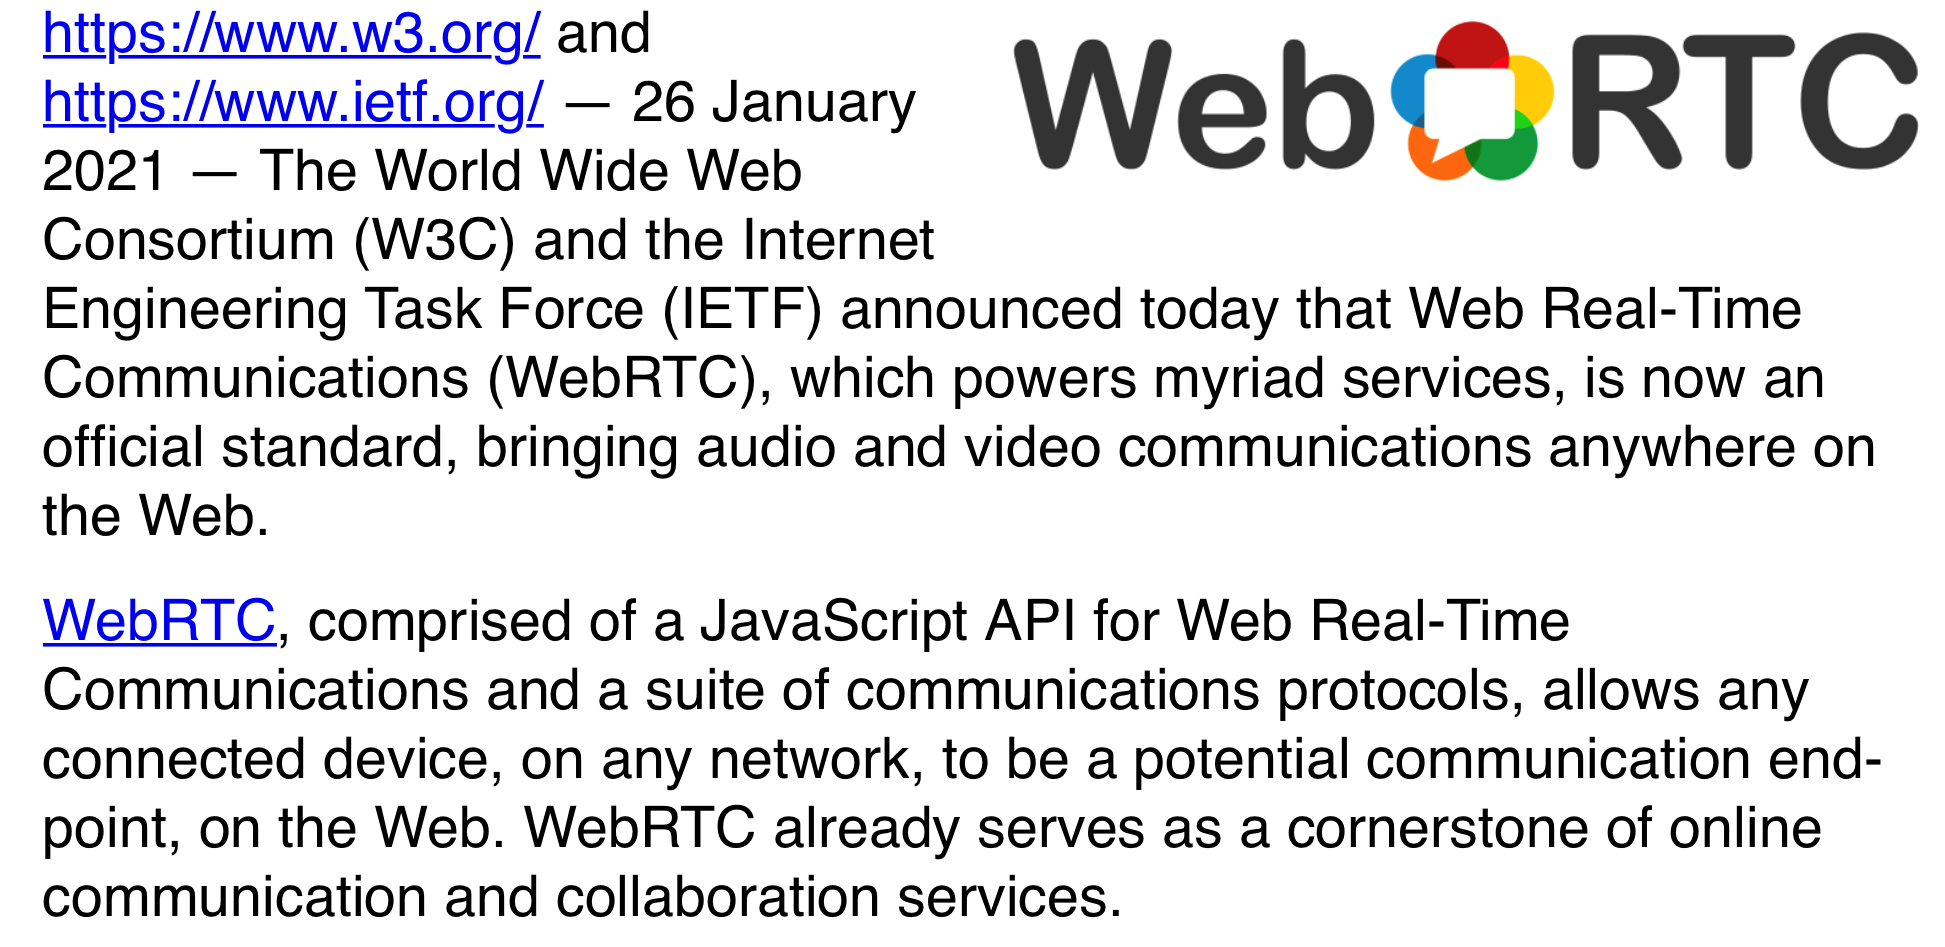 WebRTC 成为 W3C 和 IETF 正式标准